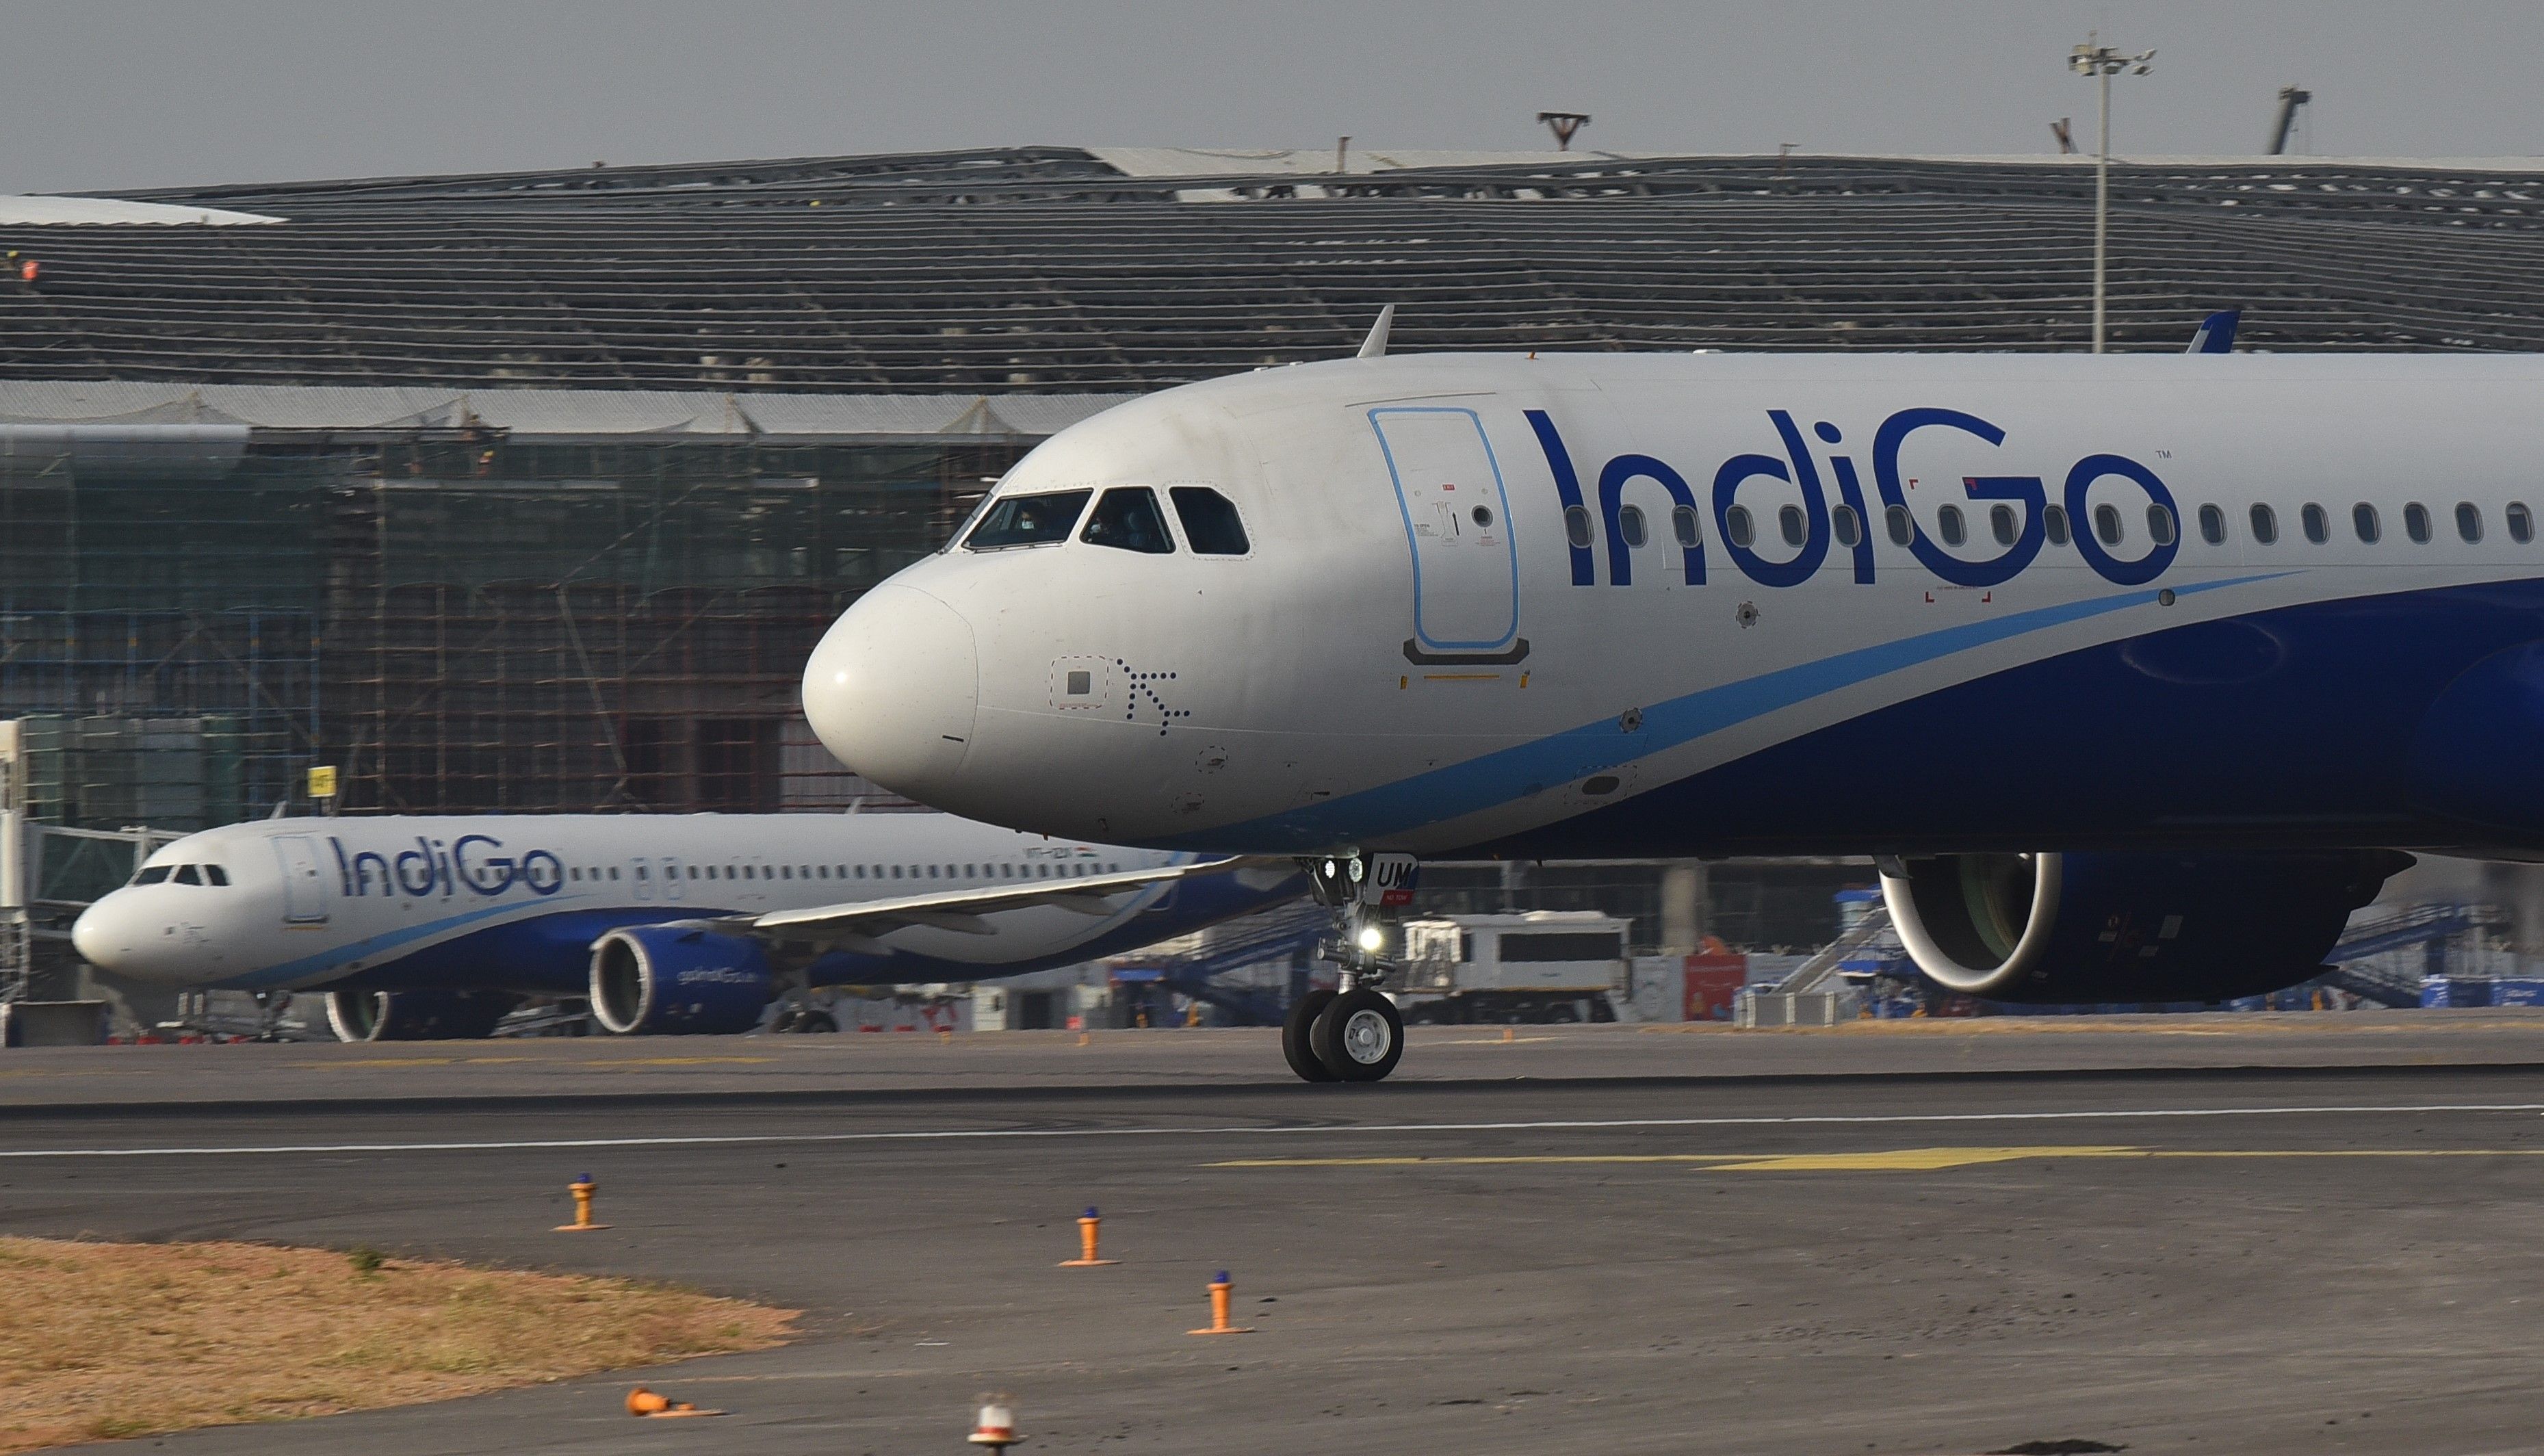 IndiGo Airbus A320 aircraft parked at Hyderabad Airport.